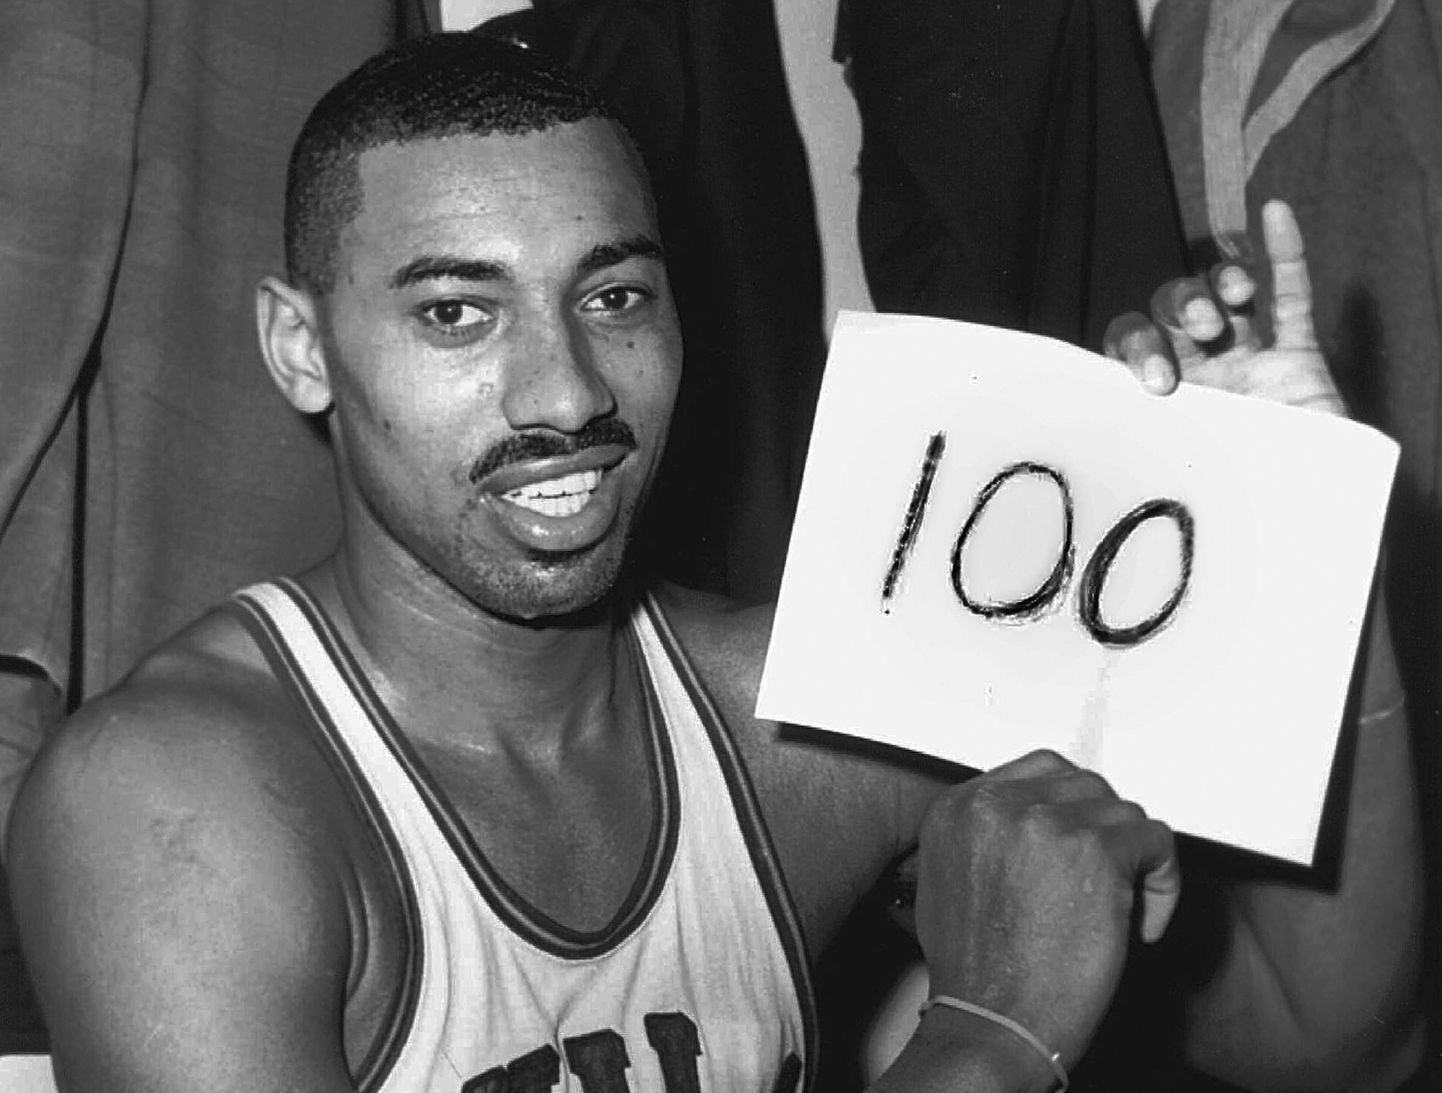 Wilt Chamberlain viskas ühes NBA mängus 100 punkti. Tema tolle hooaja keskmine oli laias laastus poole väiksem, mis on pika puuga parim tulemus üldse.